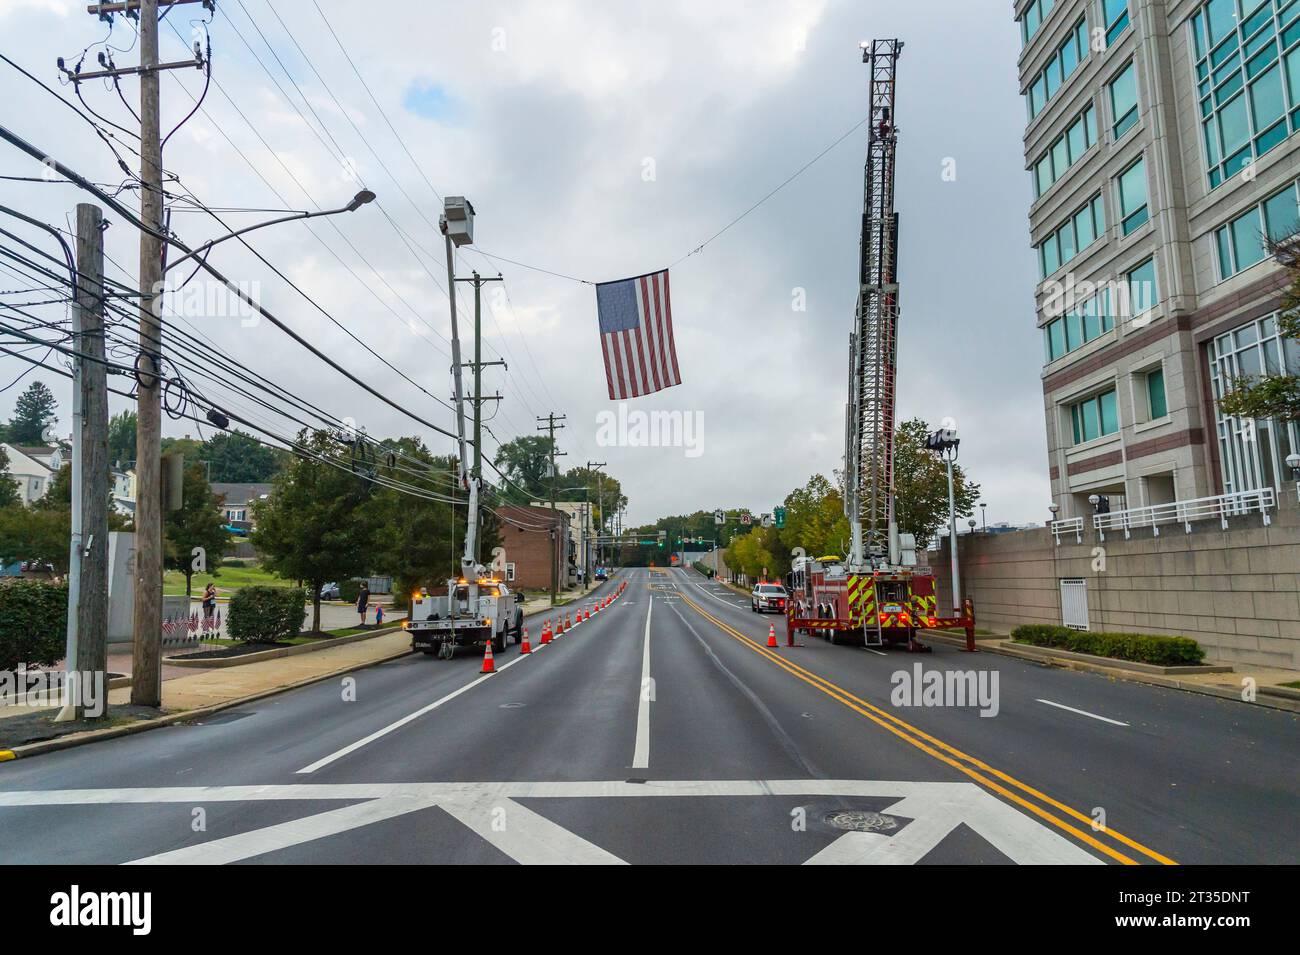 Amerikanische Flagge hängt am Feuerwehrauto über der gesperrten Straße zur Vorbereitung des 5-km-Rennens, Conshohocken, PA USA Stockfoto